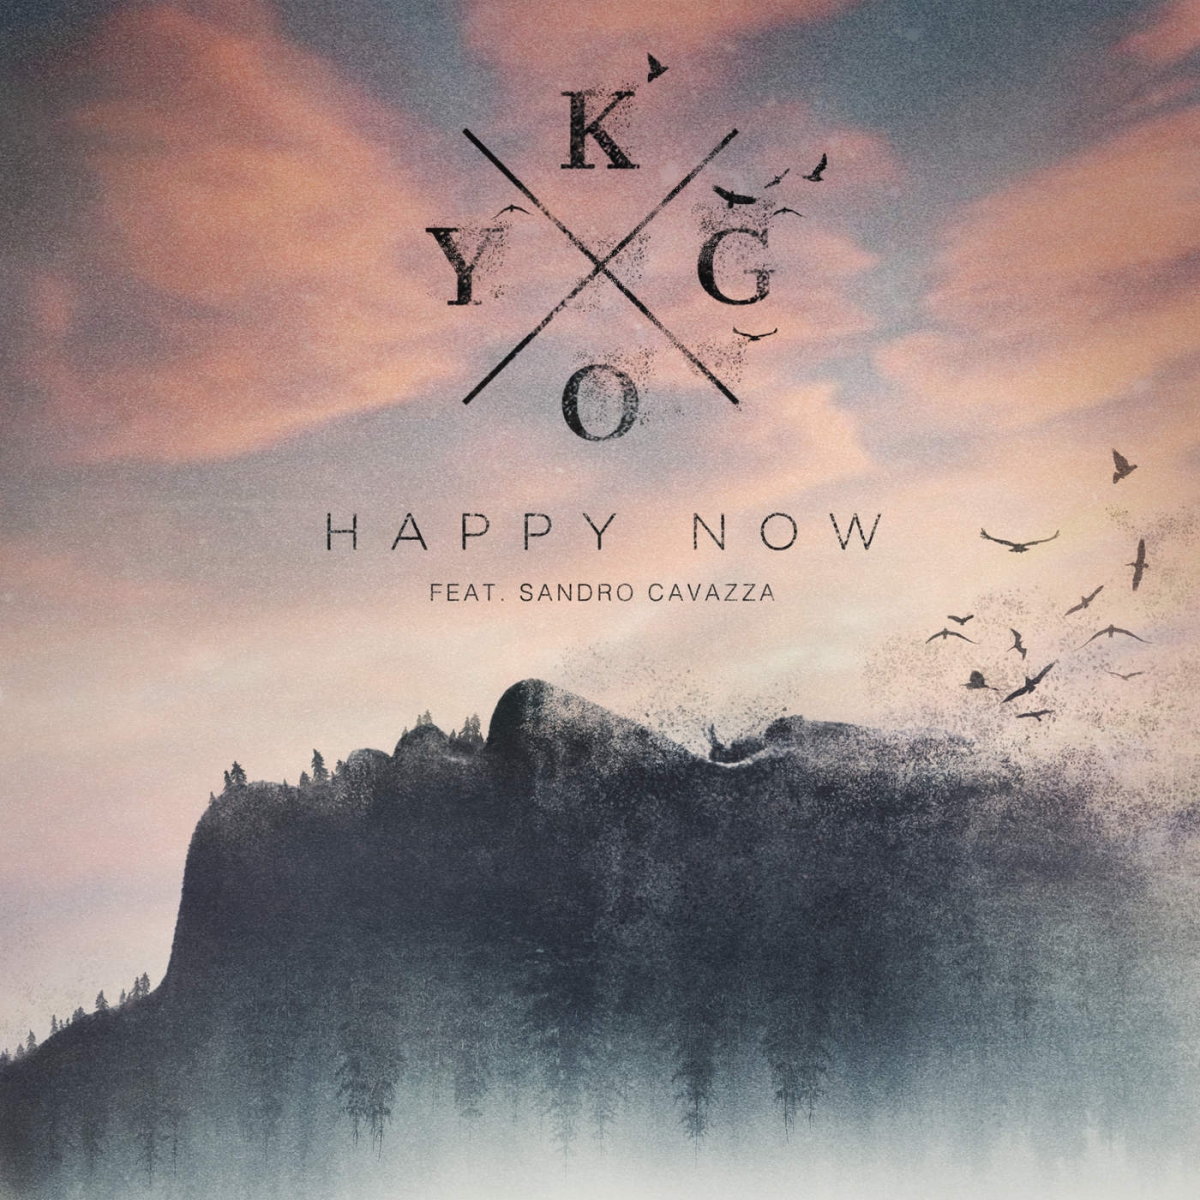 KYGO - Happy Now (feat. Sandro Cavazza)